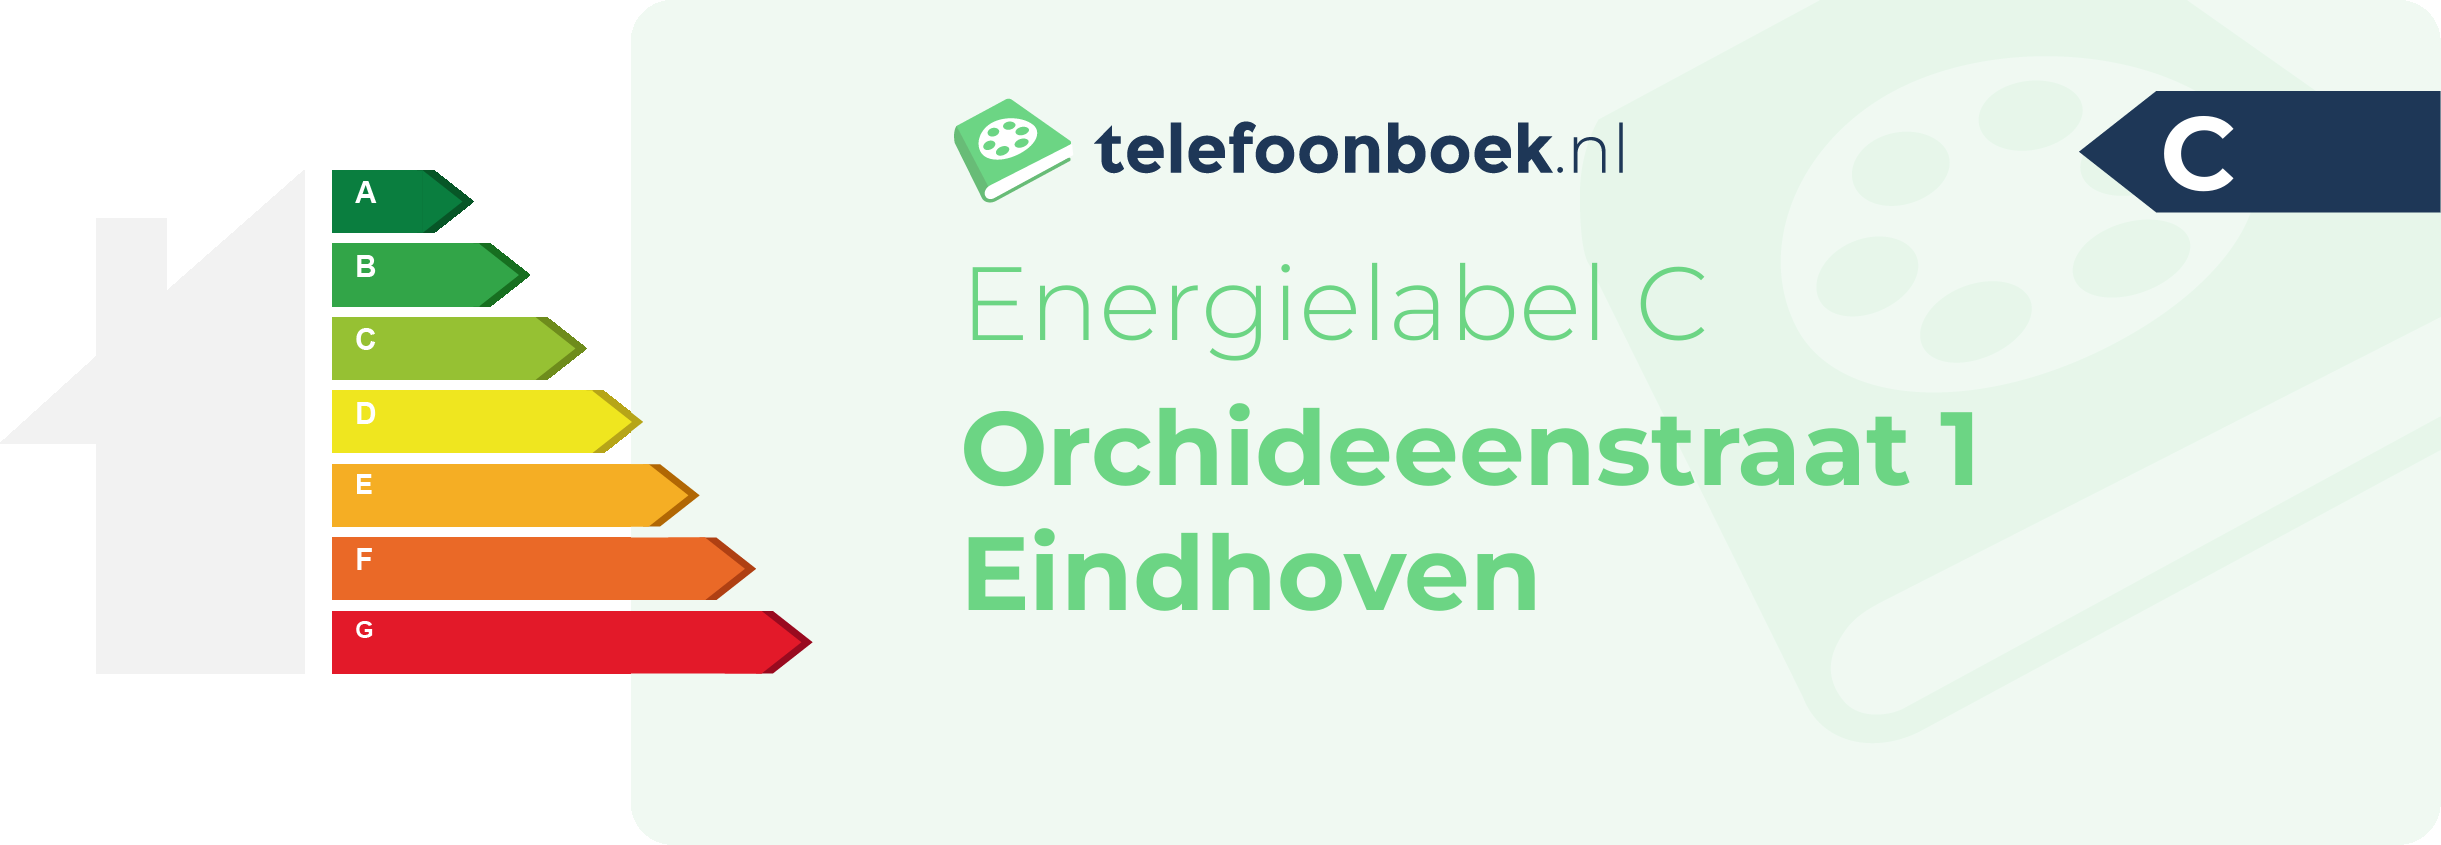 Energielabel Orchideeenstraat 1 Eindhoven